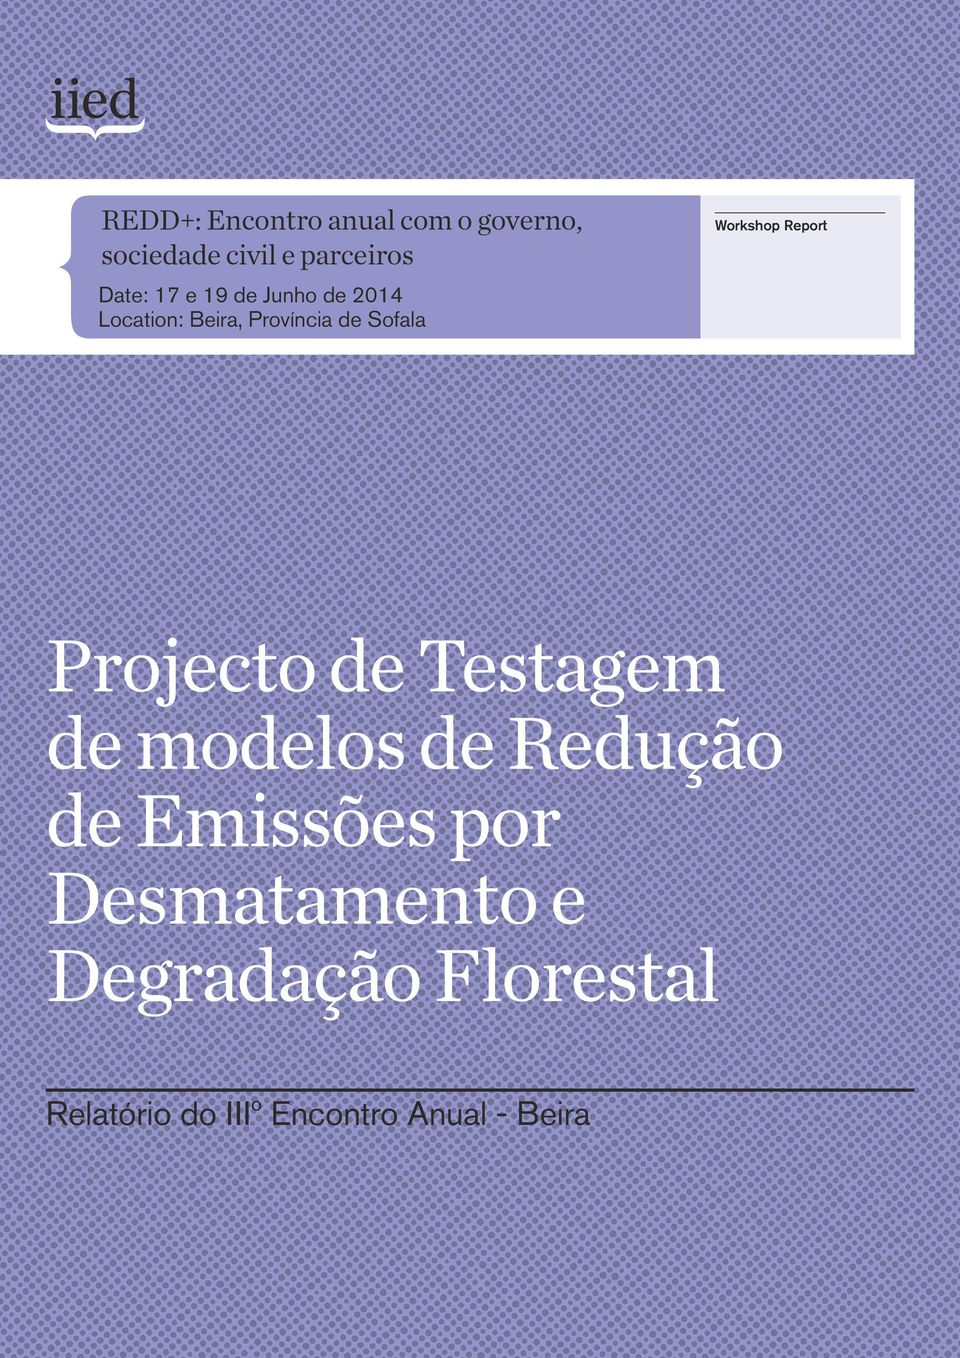 Report Projecto de Testagem de modelos de Redução de Emissões por